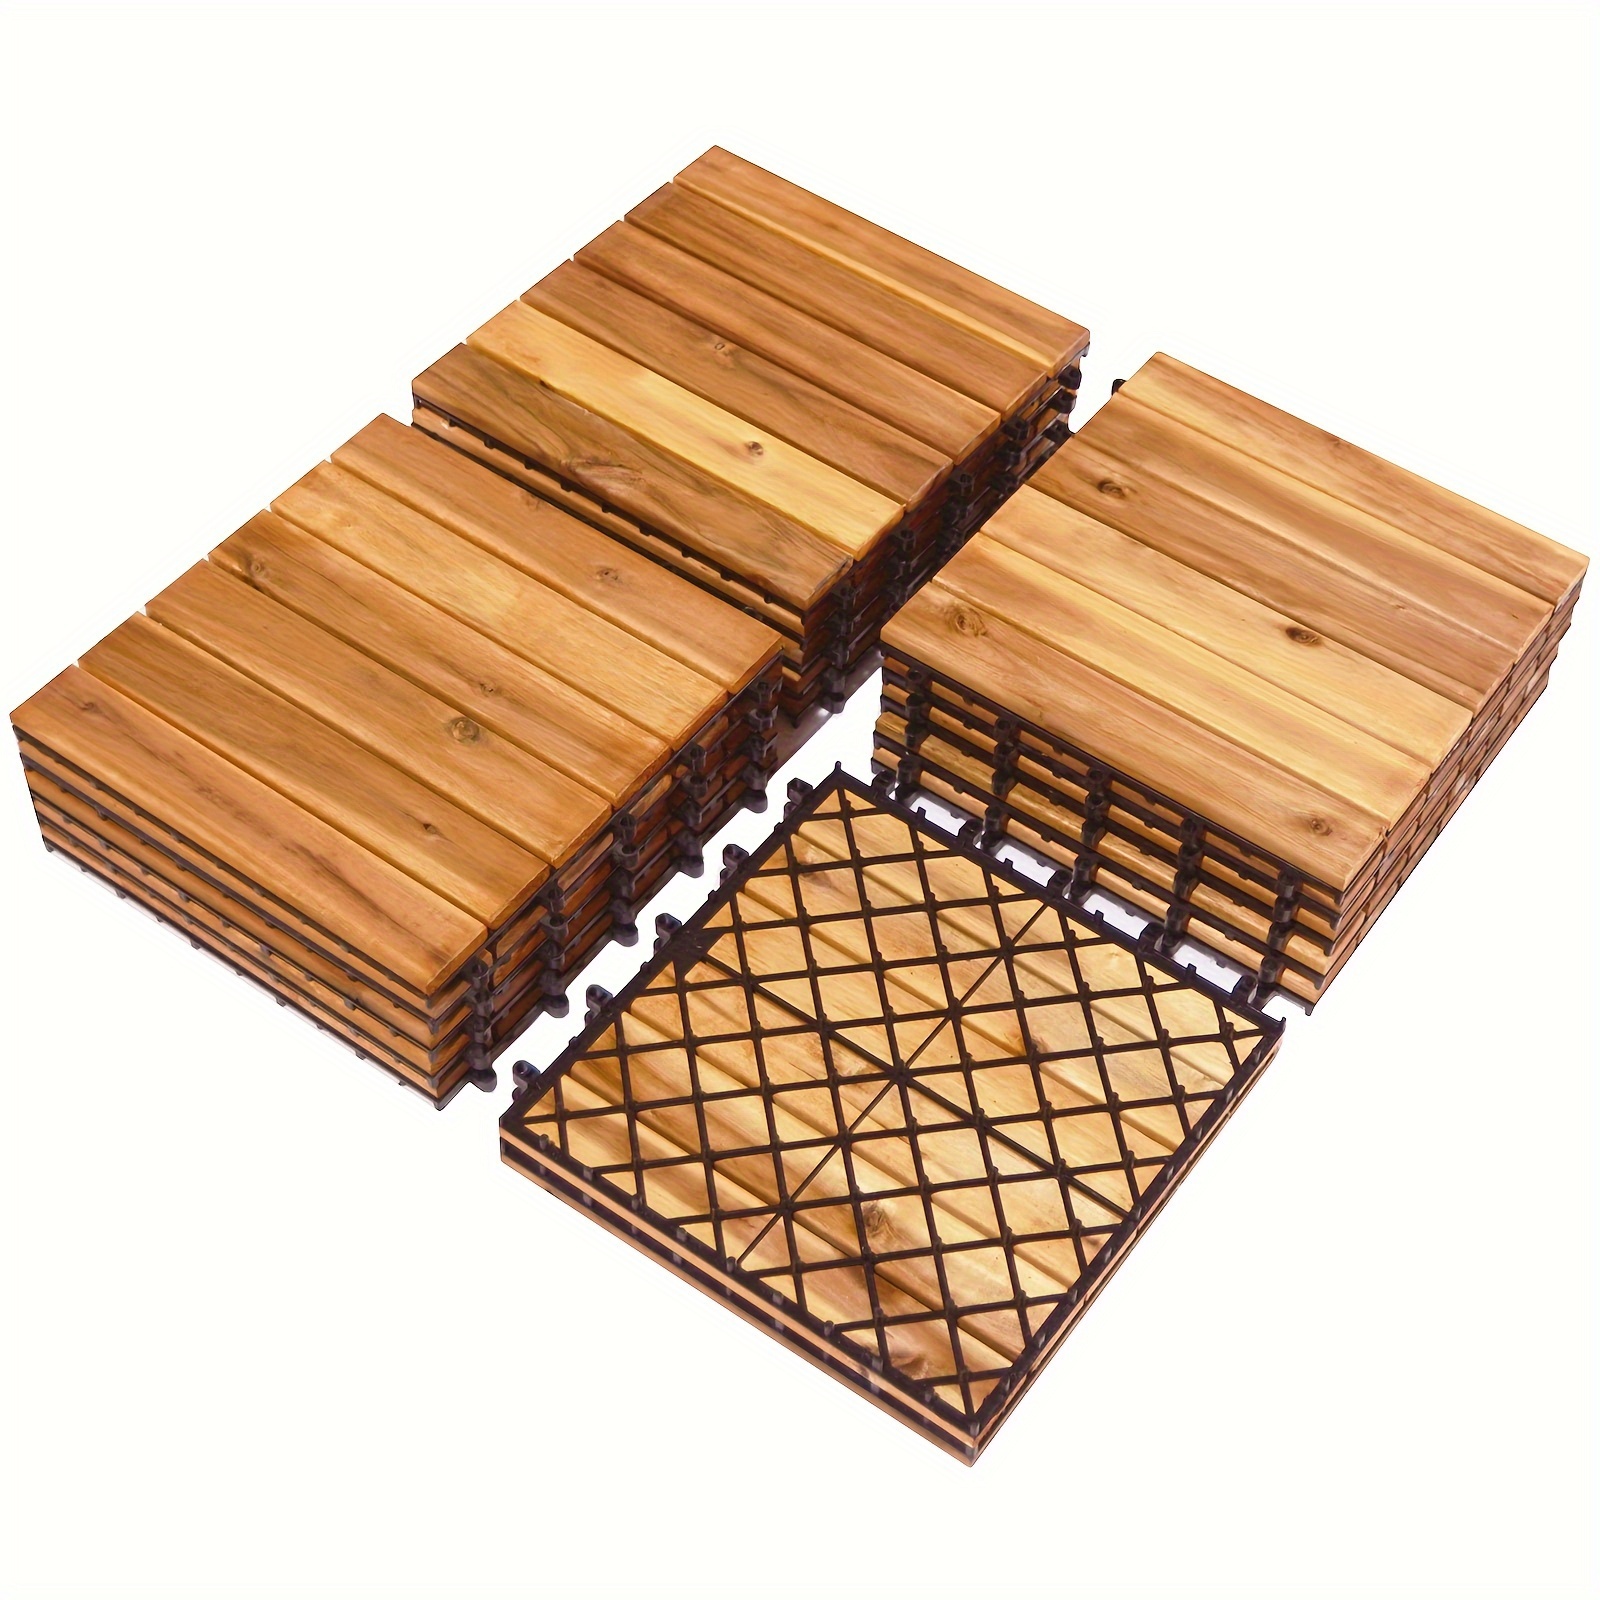 

27pcs Patio Interlocking Tiles Acacia Slat Wood Garden Outdoor &indoor, Carpet Tiles, Floor Mat